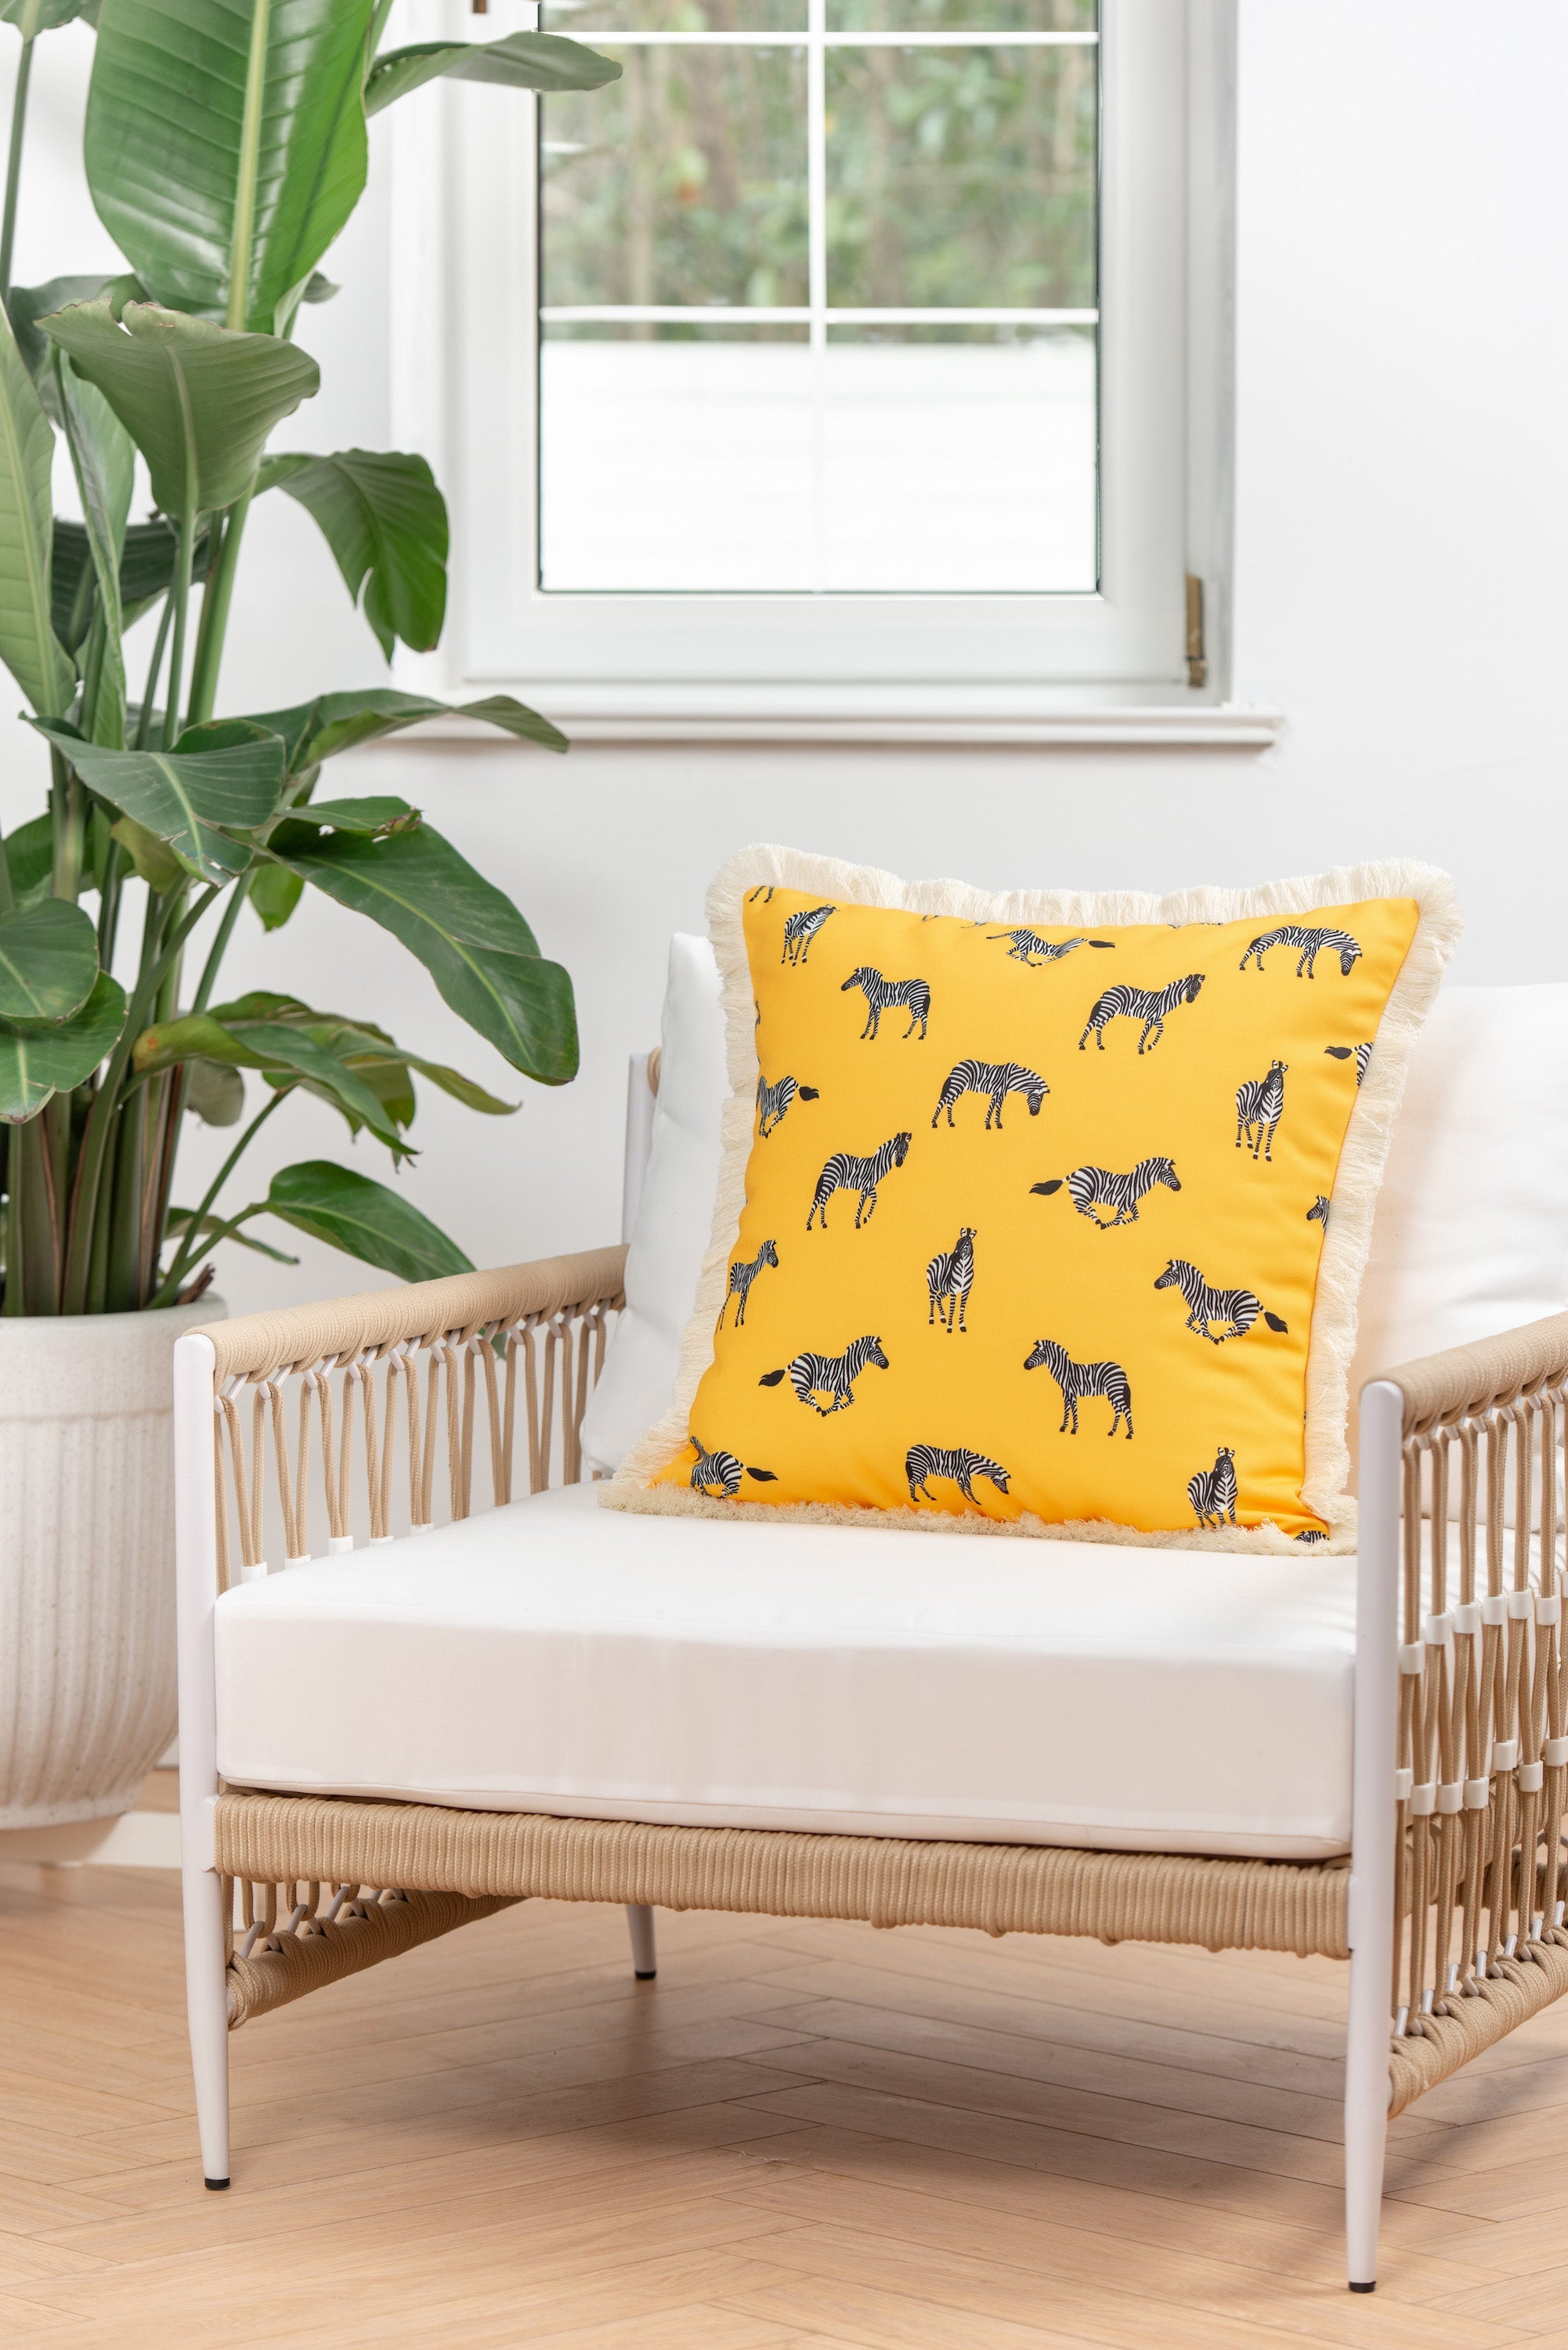 Tropical Indoor Outdoor Pillow Cover, Zebra Fringe, Yellow, 20"x20"